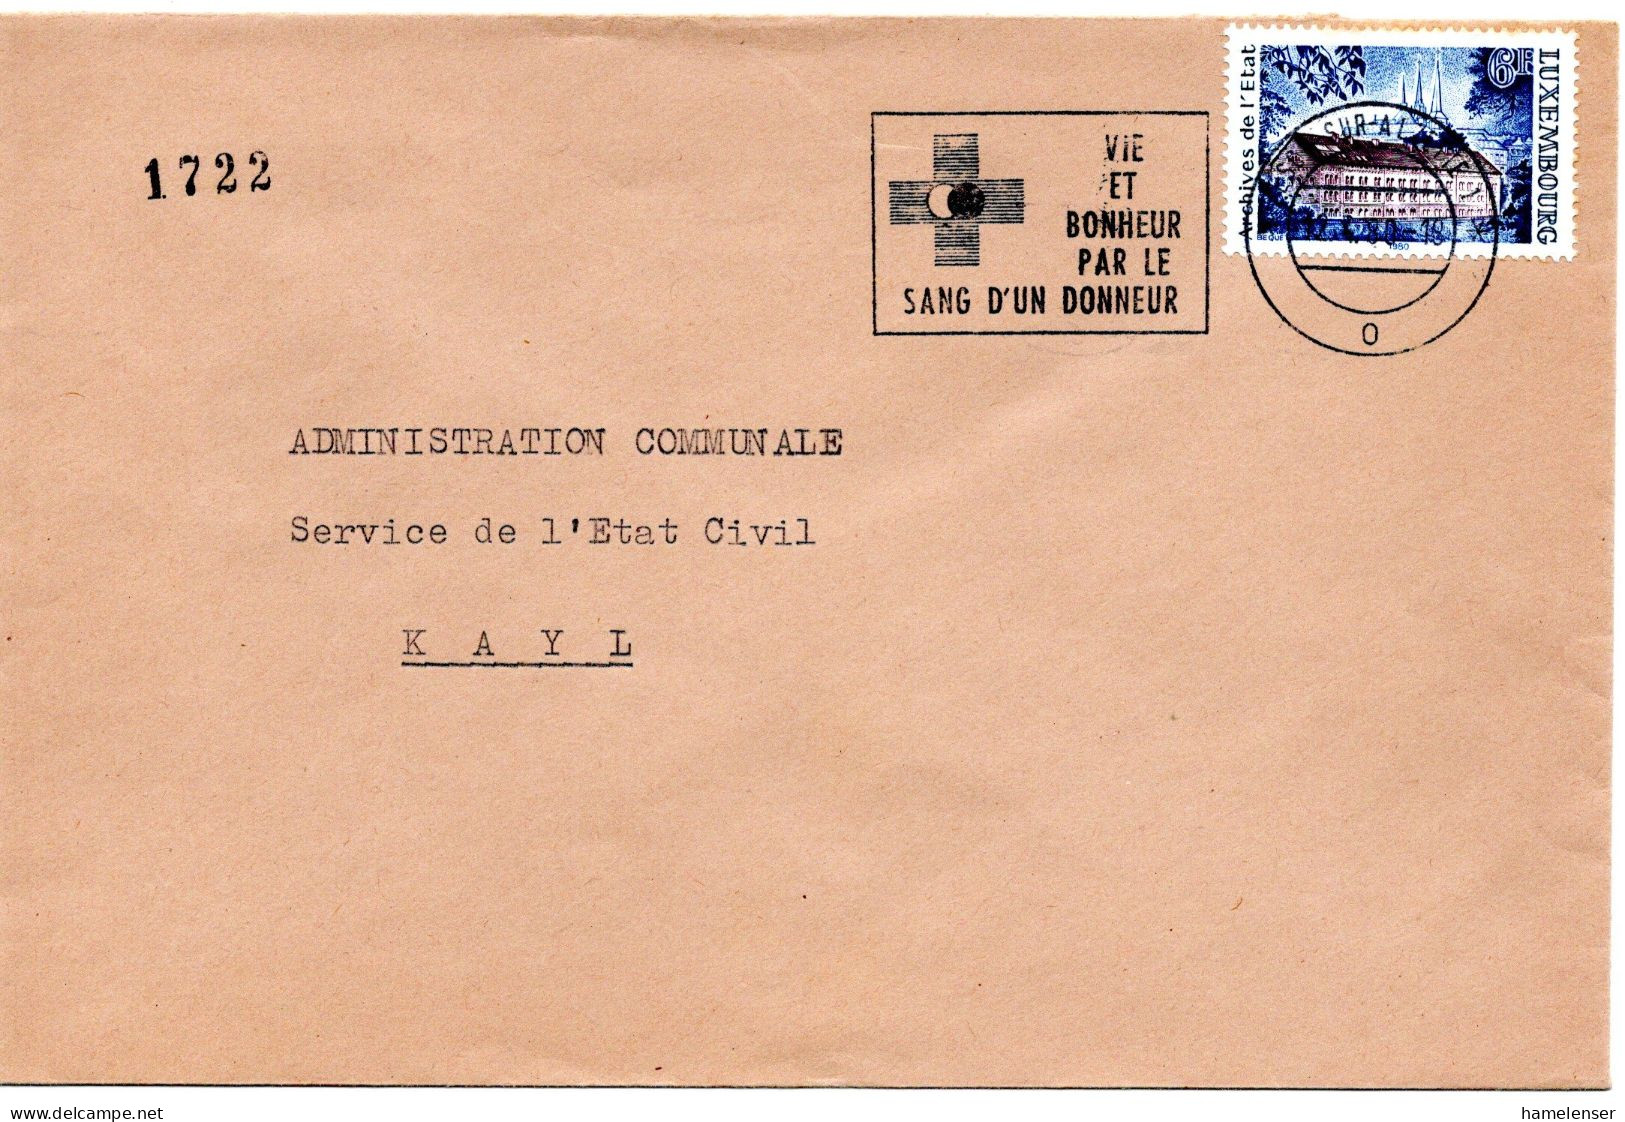 60690 - Luxemburg - 1980 - 6F Staatsarchiv EF A Bf ESCH - VIE ET BONHEUR PAR LE SANG D'UN DONNEUR -> Kayl - Medicine